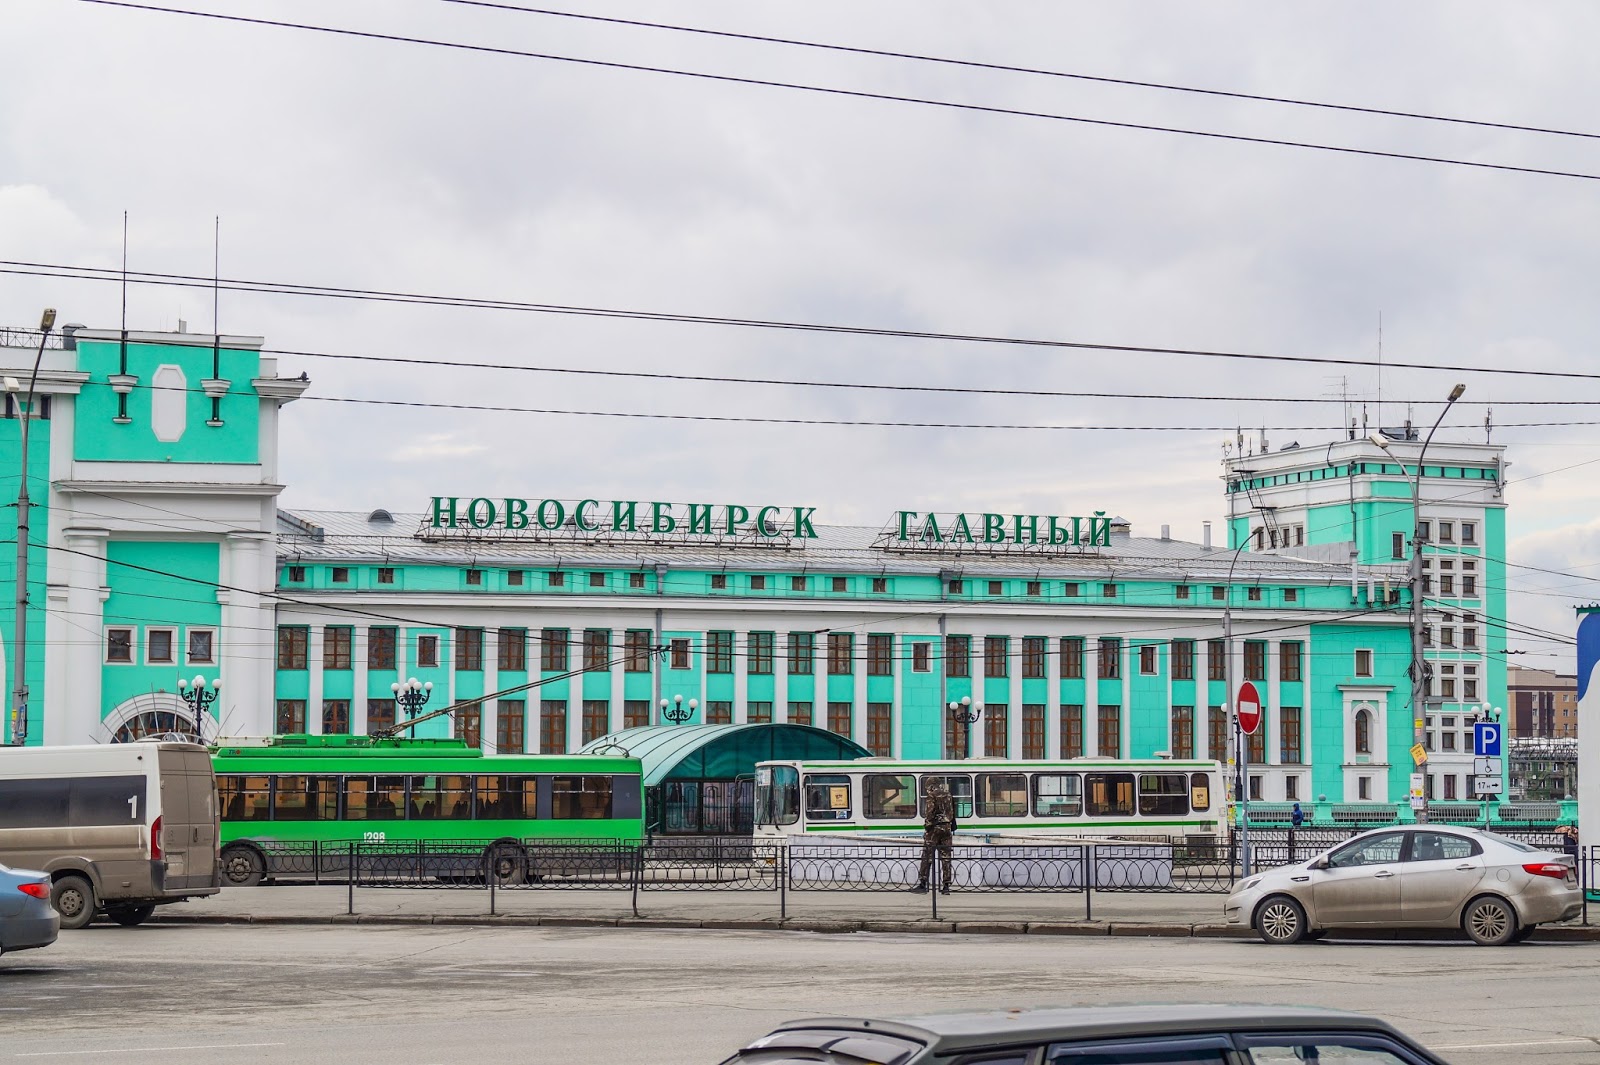 Номер телефона главного вокзала. Станция Новосибирск-главный, Новосибирск. Новосибирский главный вокзал главный Новосибирск. Автостанция Новосибирск ЖД вокзал главный. Новосибирск автостанции на вокзале.